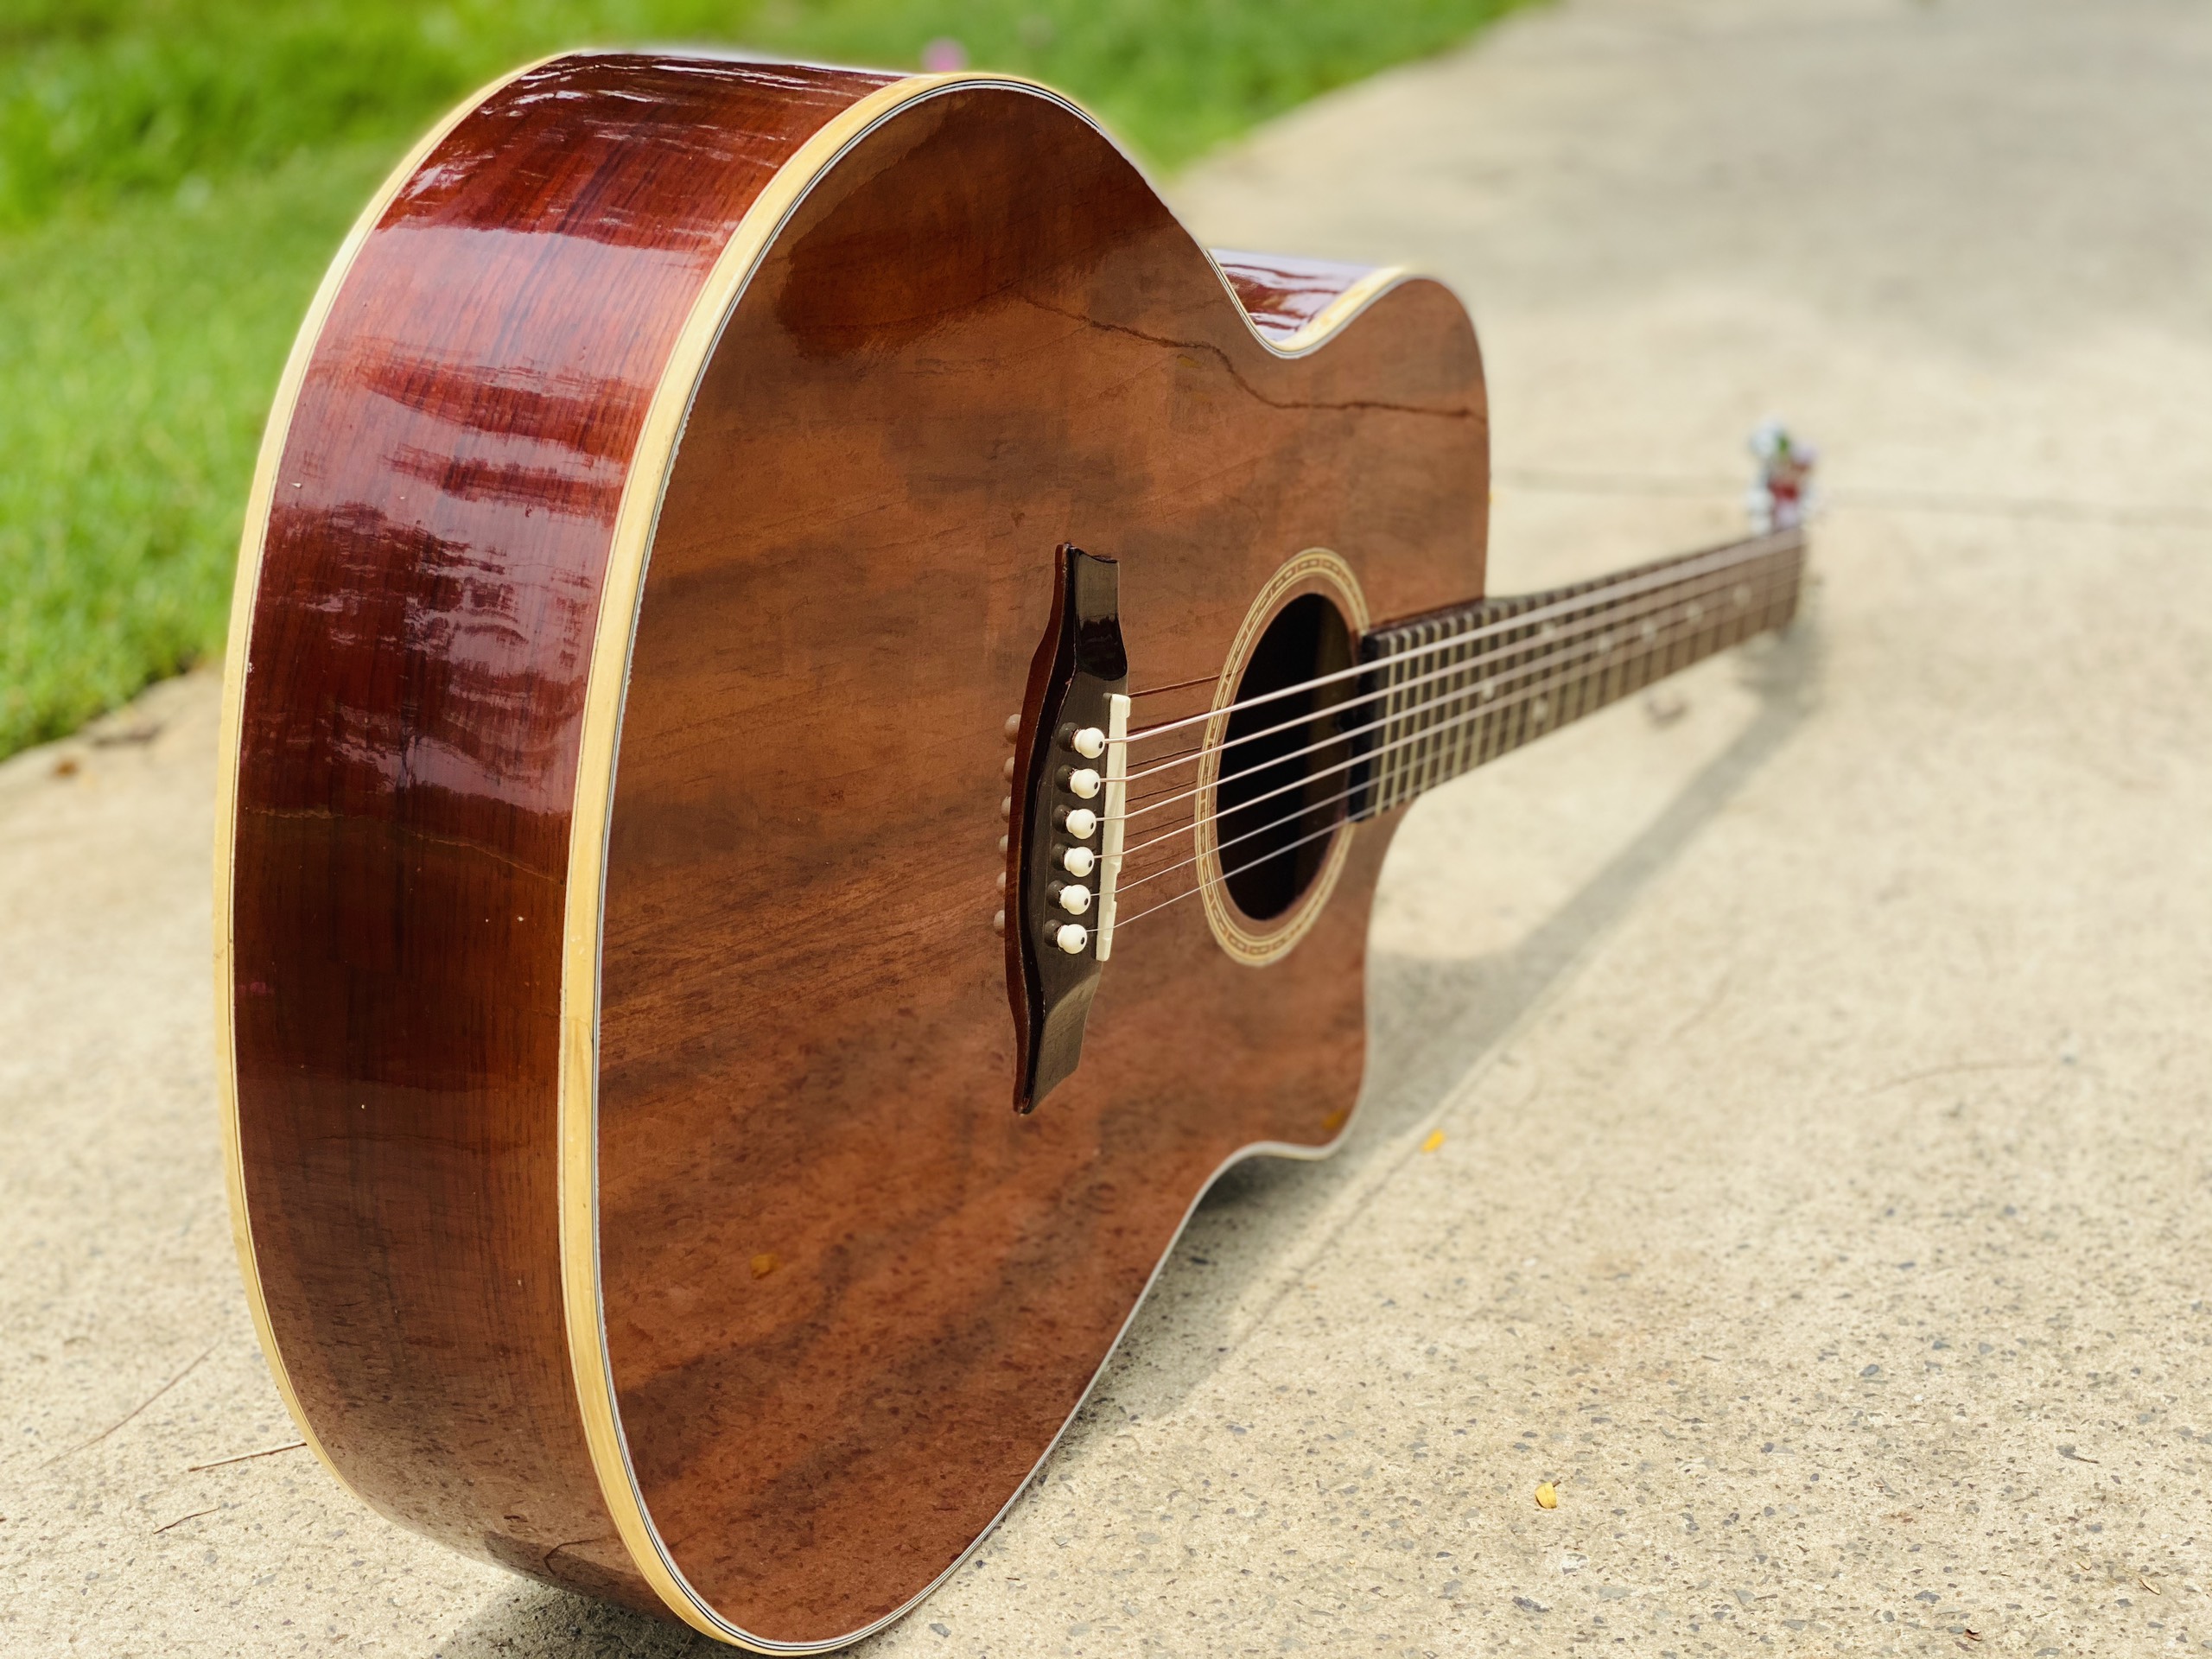 Đàn guitar Acoustic full solid gỗ hồng đào cao cấp chọn lọc có ty chỉnh cần  - Được bảo hành 2 năm giá bao nhiêu tháng 07/2021